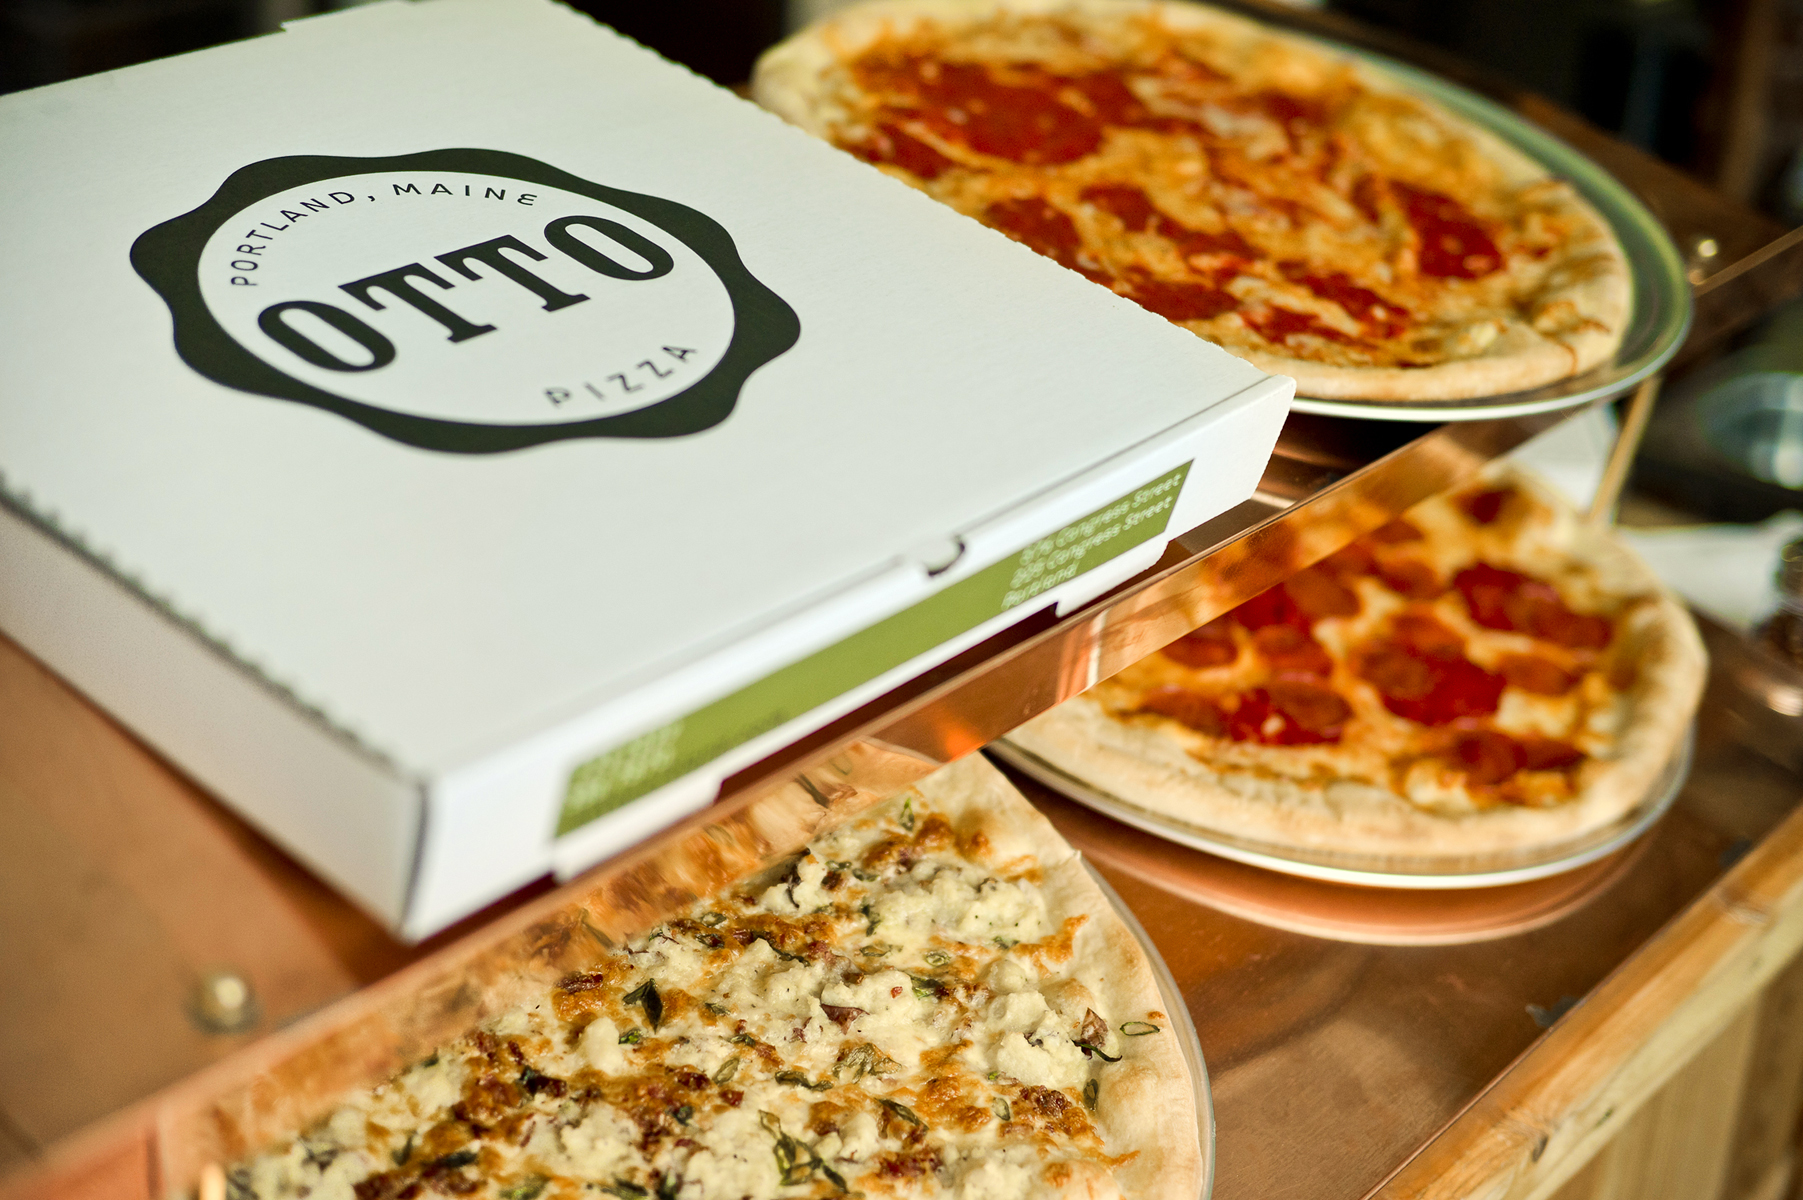 https://ottopizza.files.wordpress.com/2012/03/ottocambridge-pizza-box.jpg